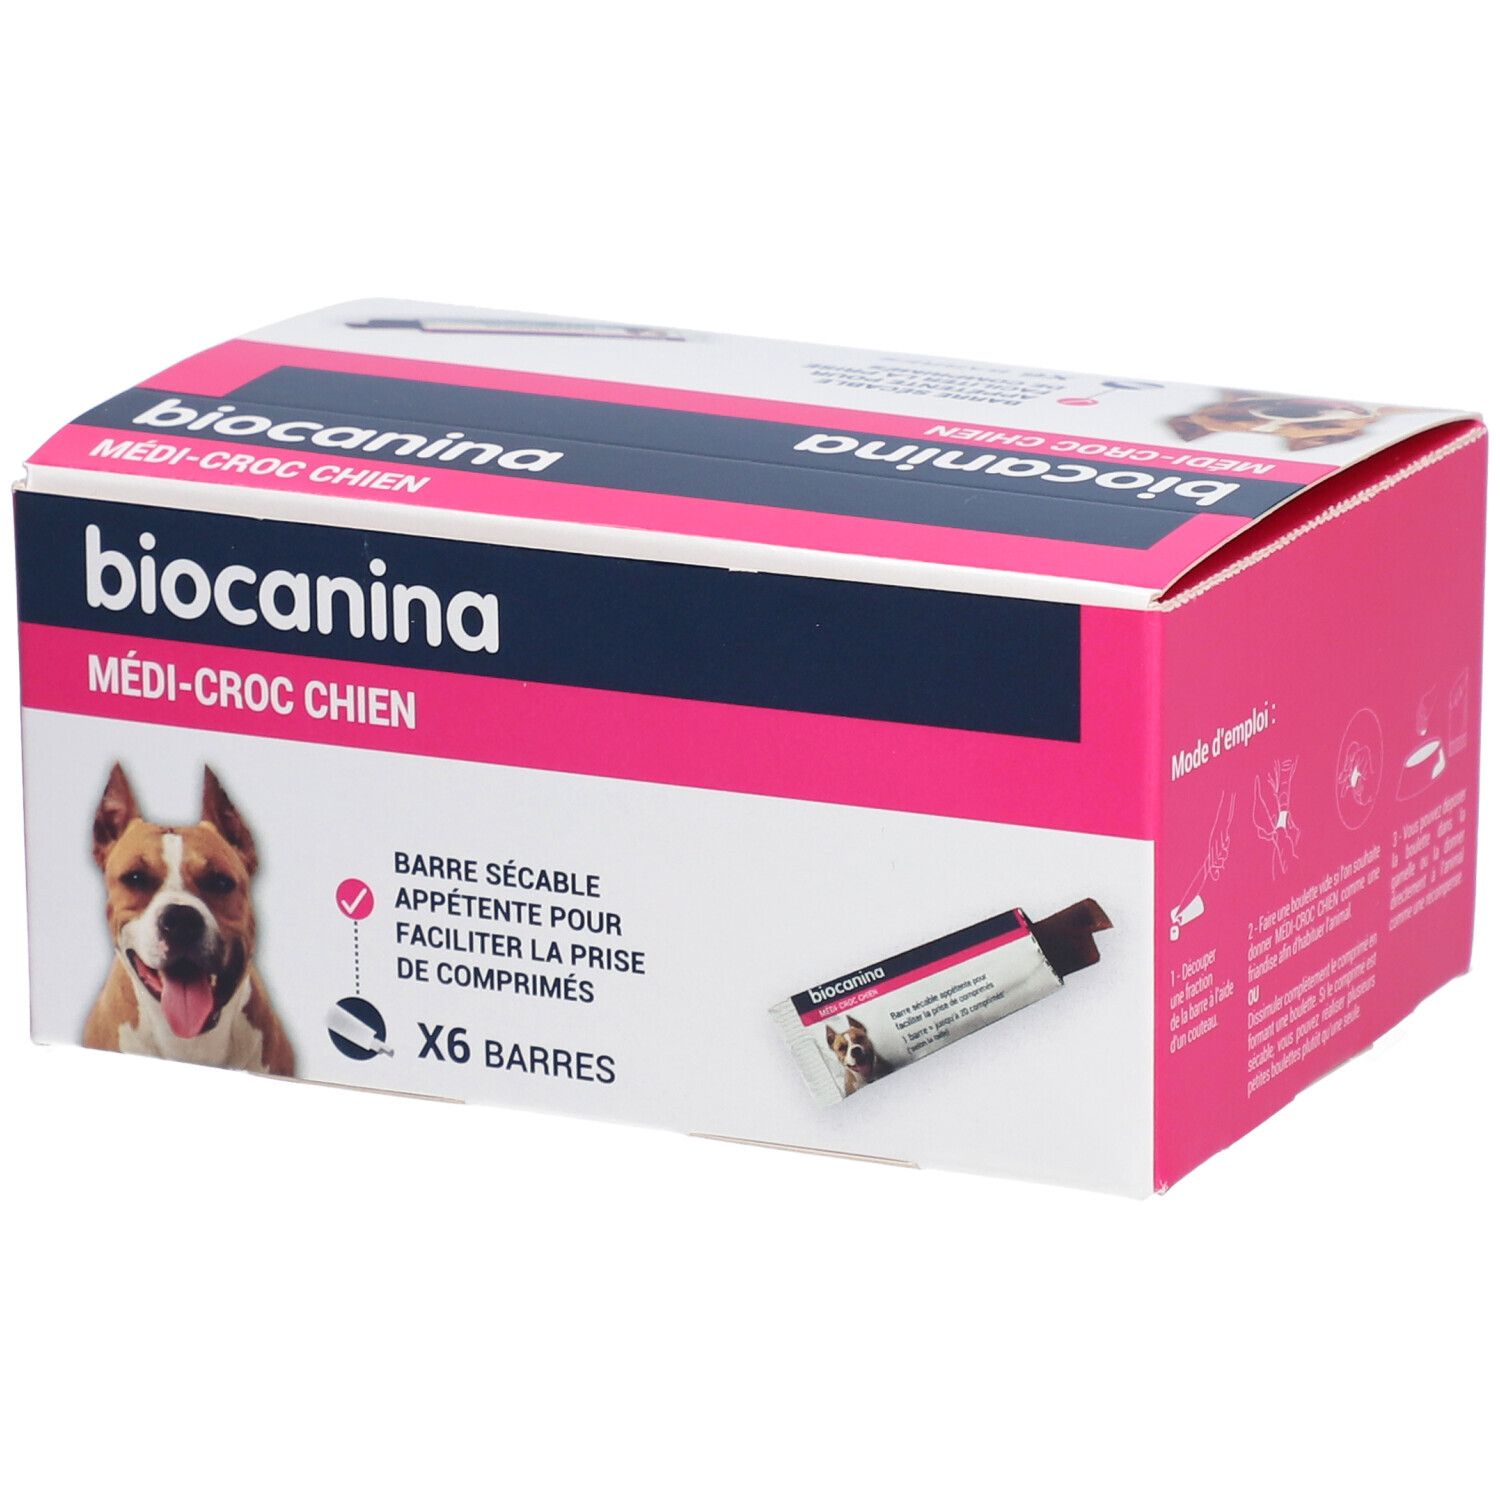 Biocanina Medi - Croc Chien - Barre à croquer, aliment complémentaire appétent pour chien.